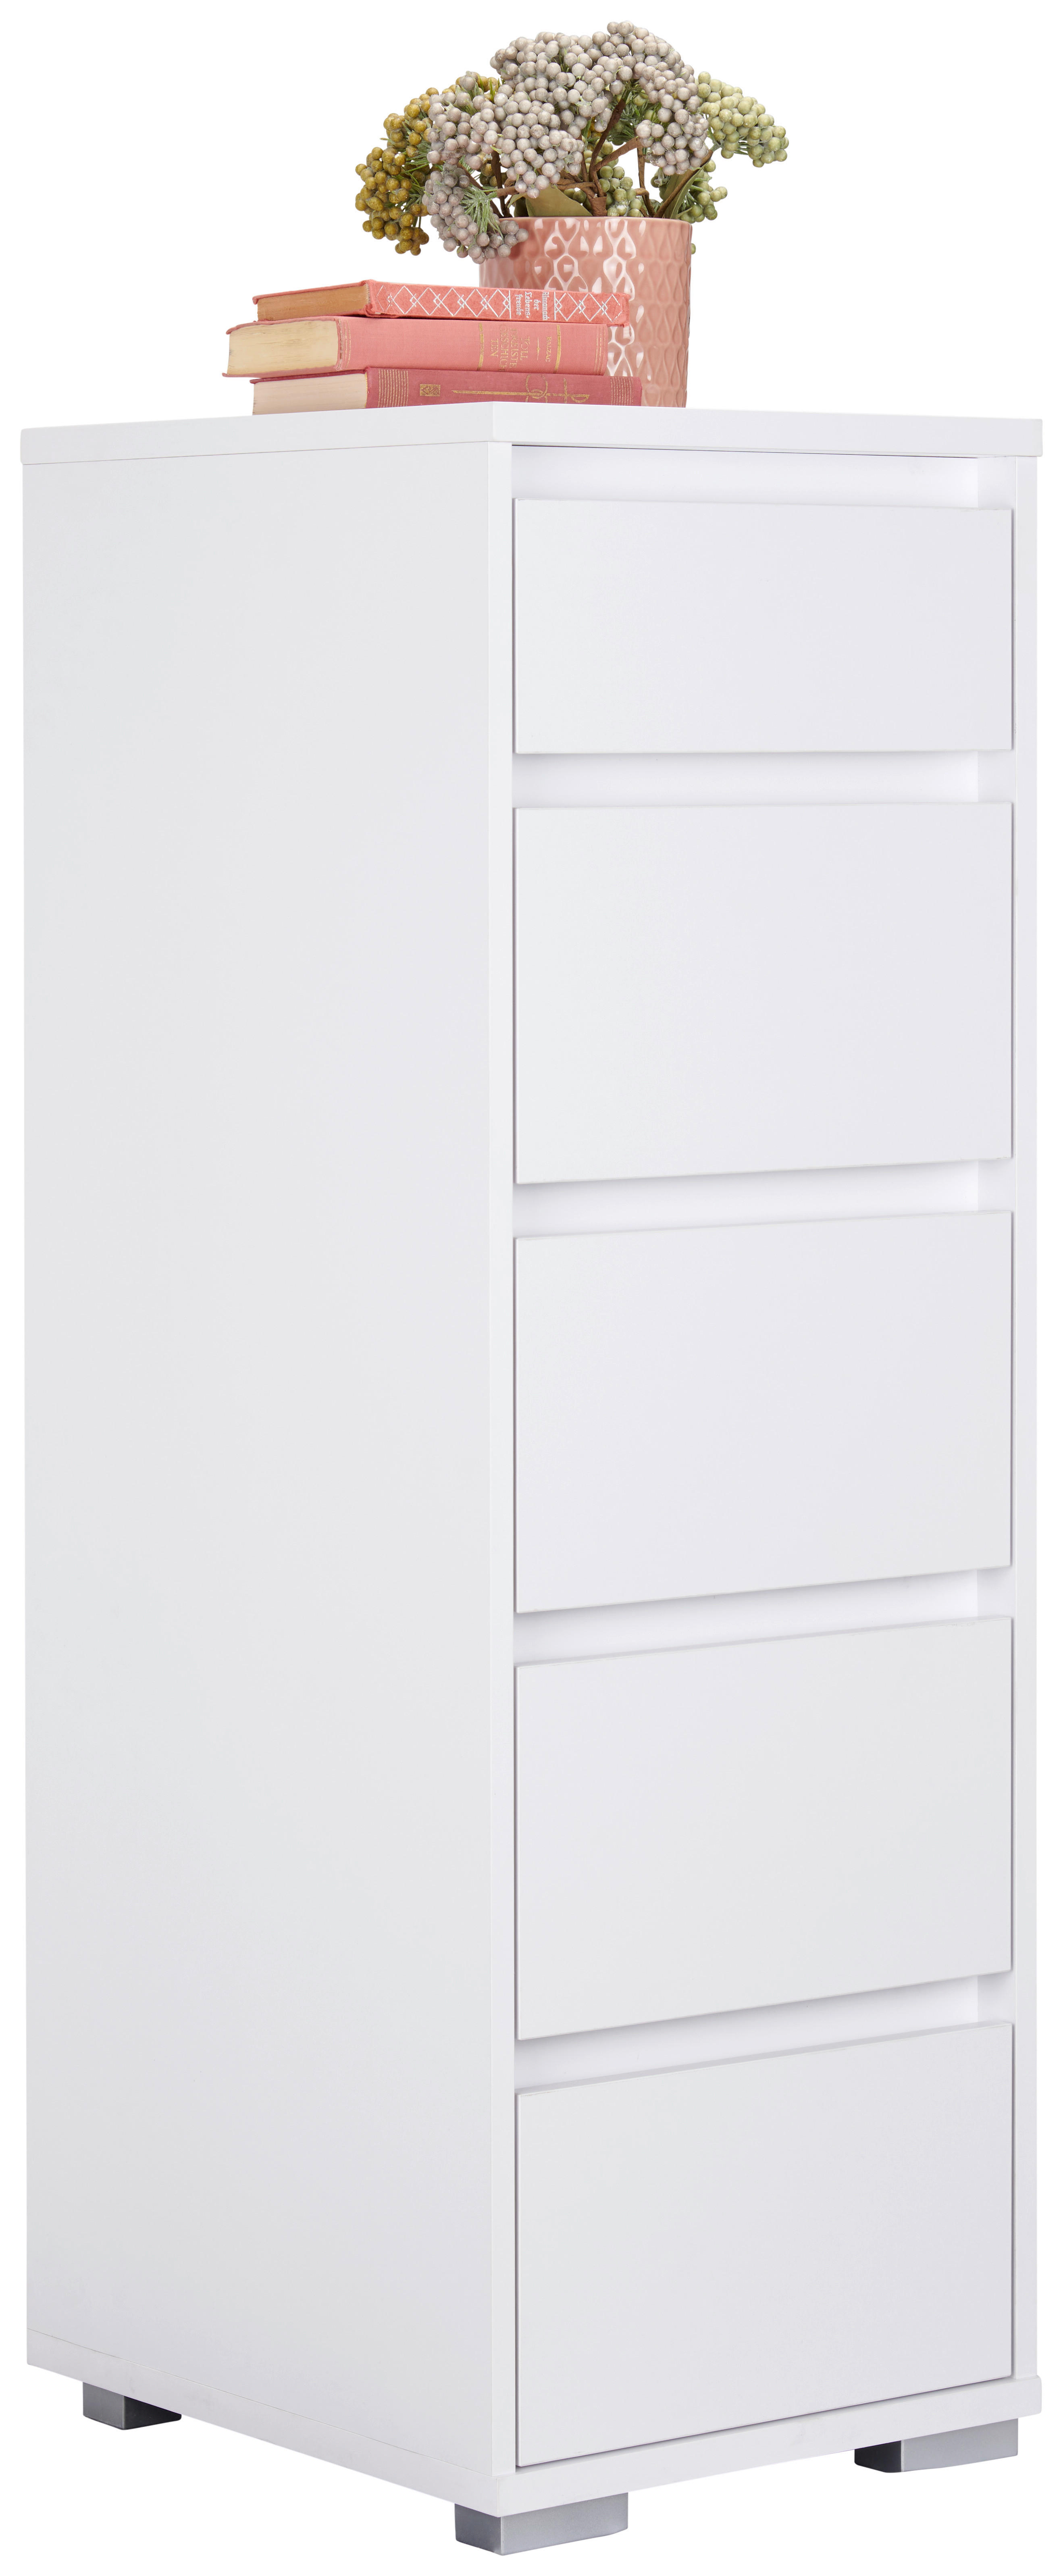 KOMODA   40/120/48 cm   bijela  - bijela/boje aluminija, Design, drvni materijal/plastika (40/120/48cm) - Carryhome